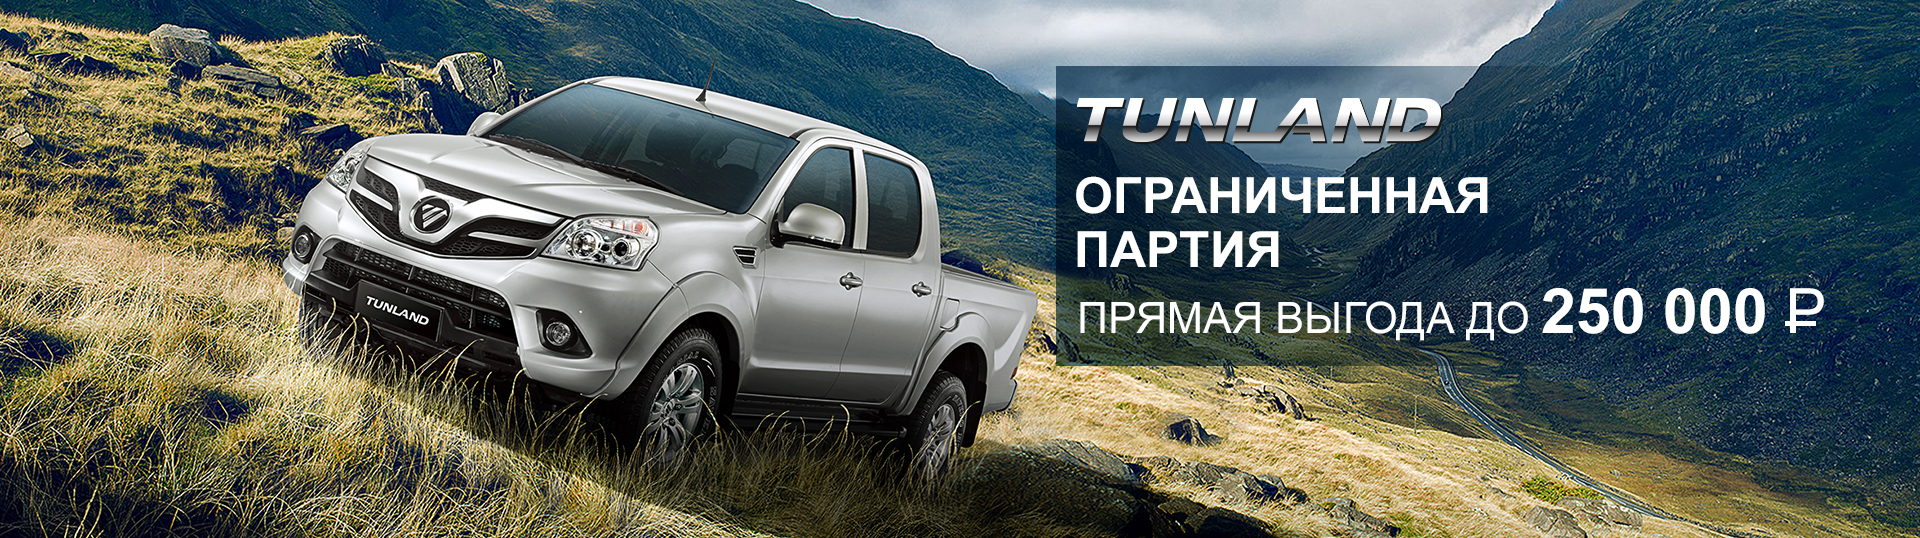 Обменяй свой старый автомобиль на новый FOTON TUNLAND по программе Трейд-ин у официальных дилеров Foton и получи скидку до 250 000 рублей